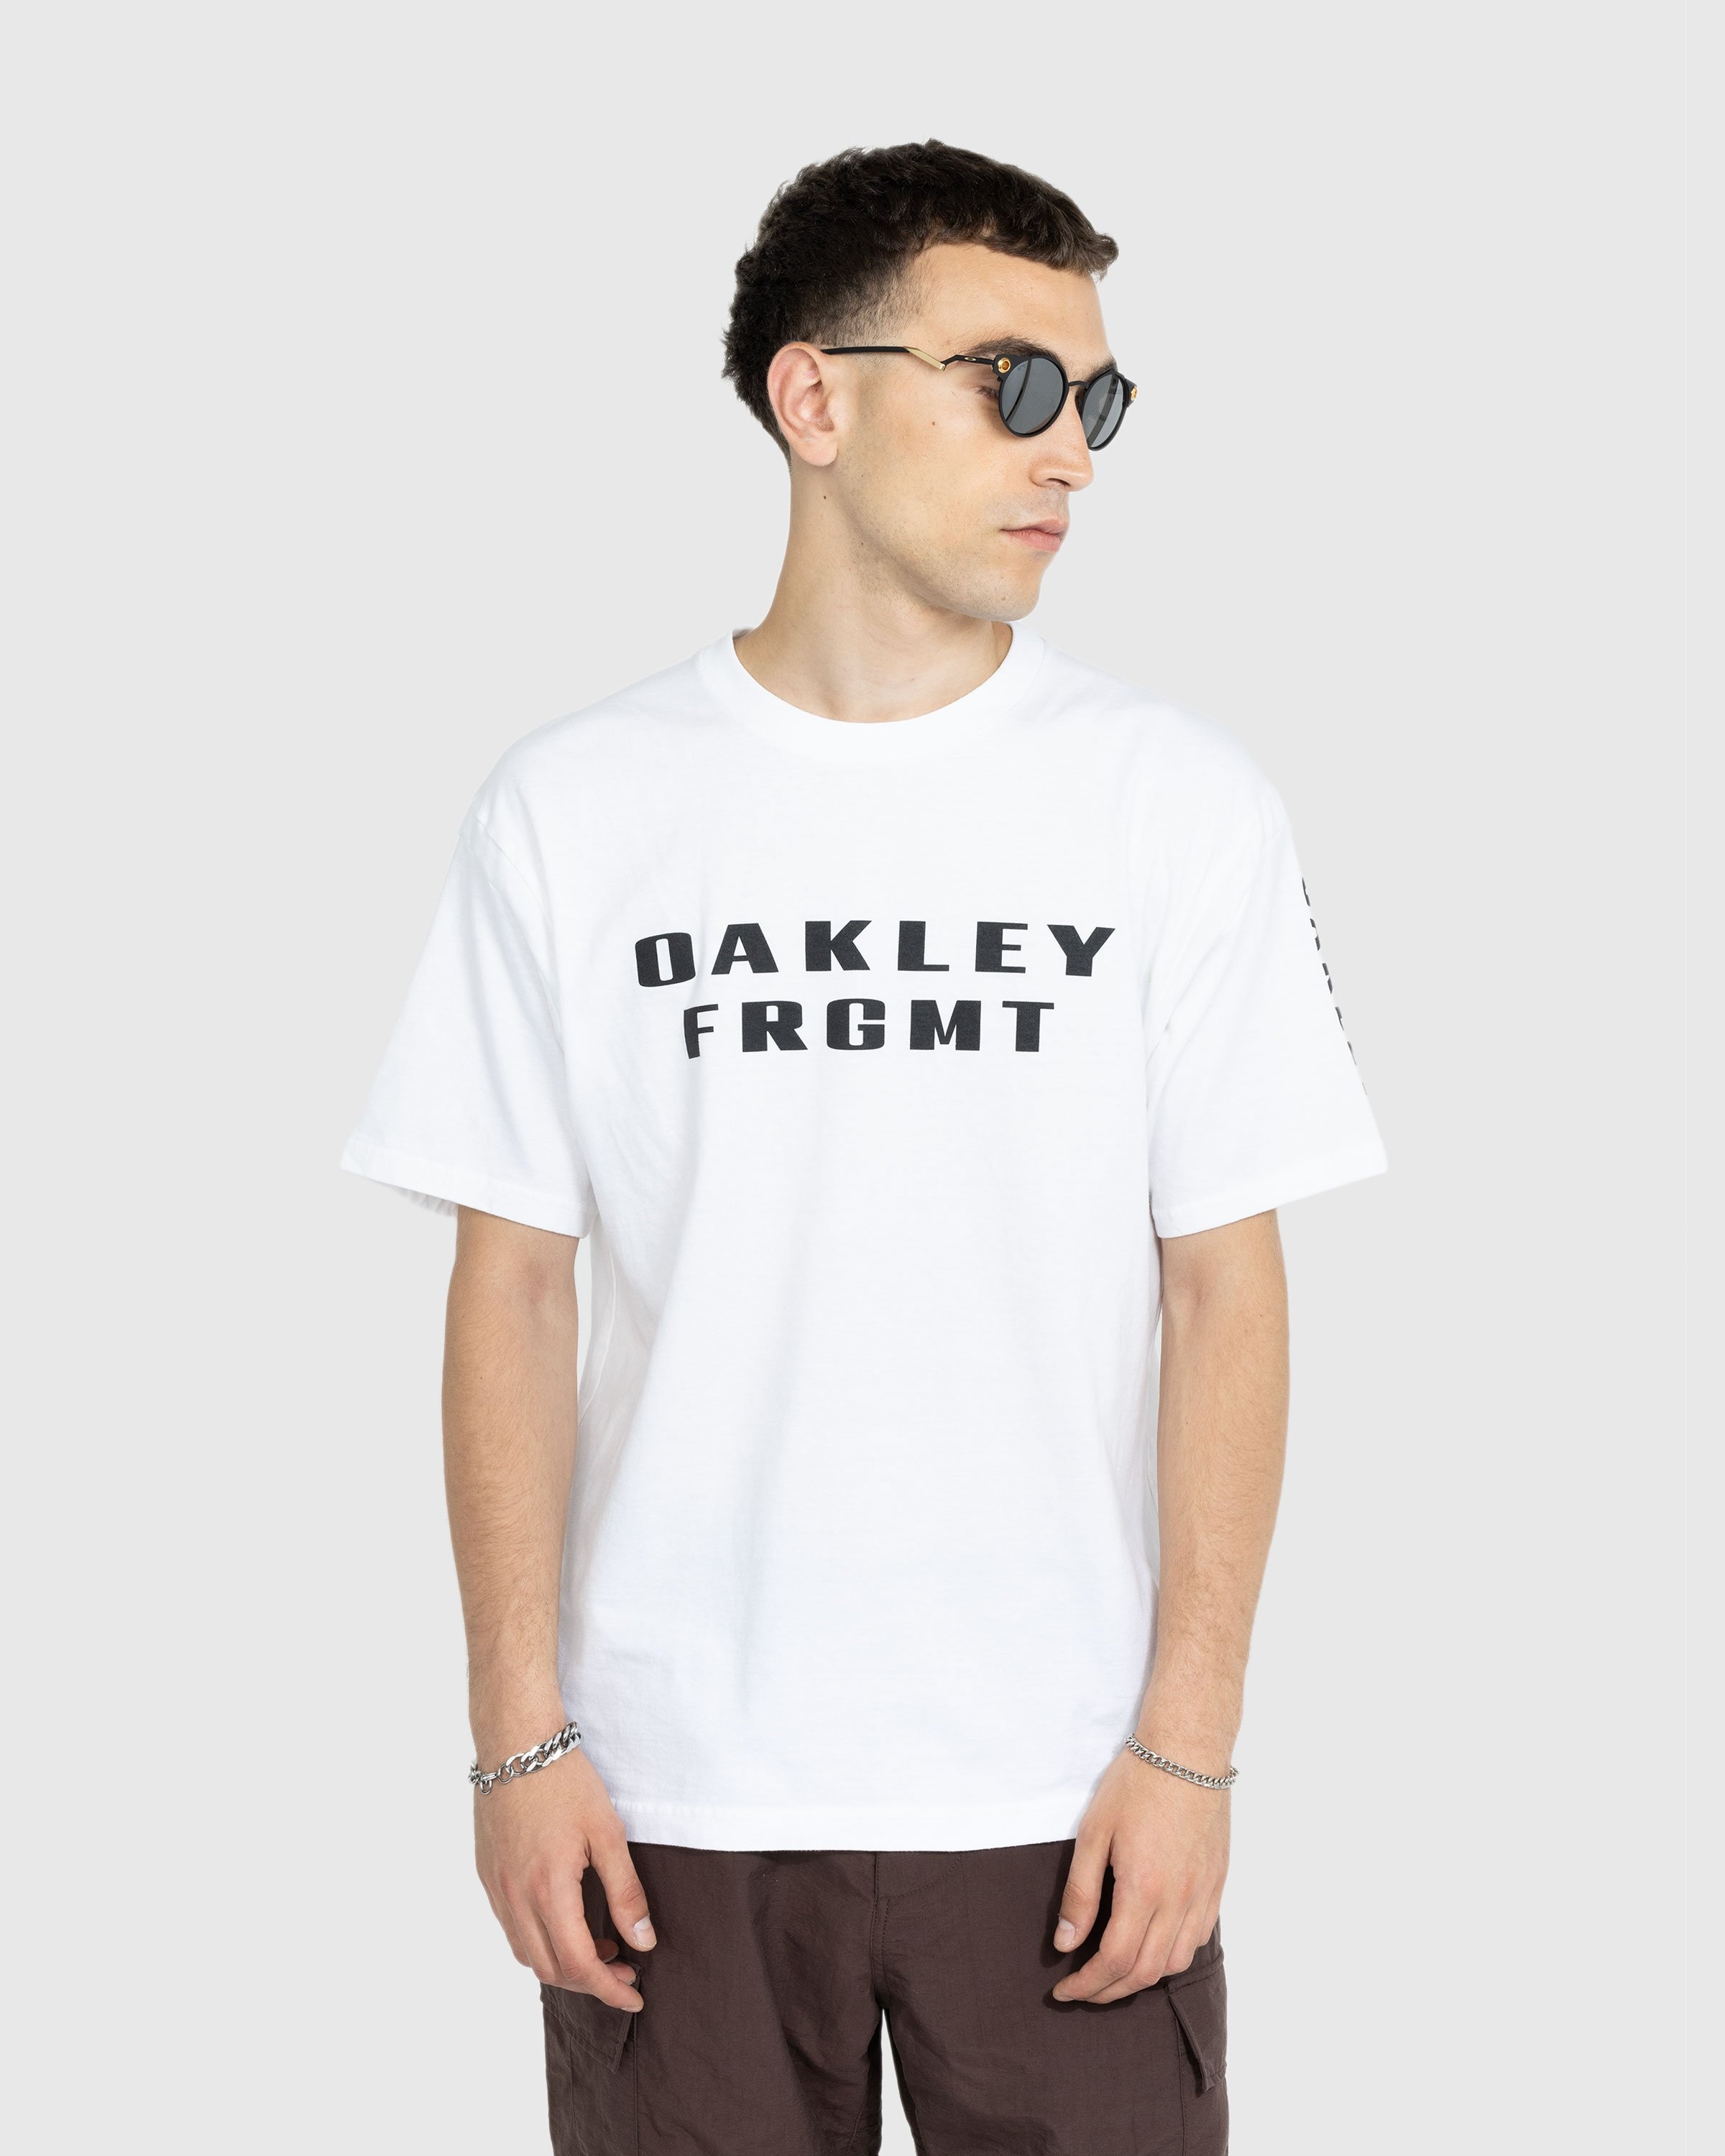 Oakley x Kylian Mbappé – Deadbolt KM | Highsnobiety Shop